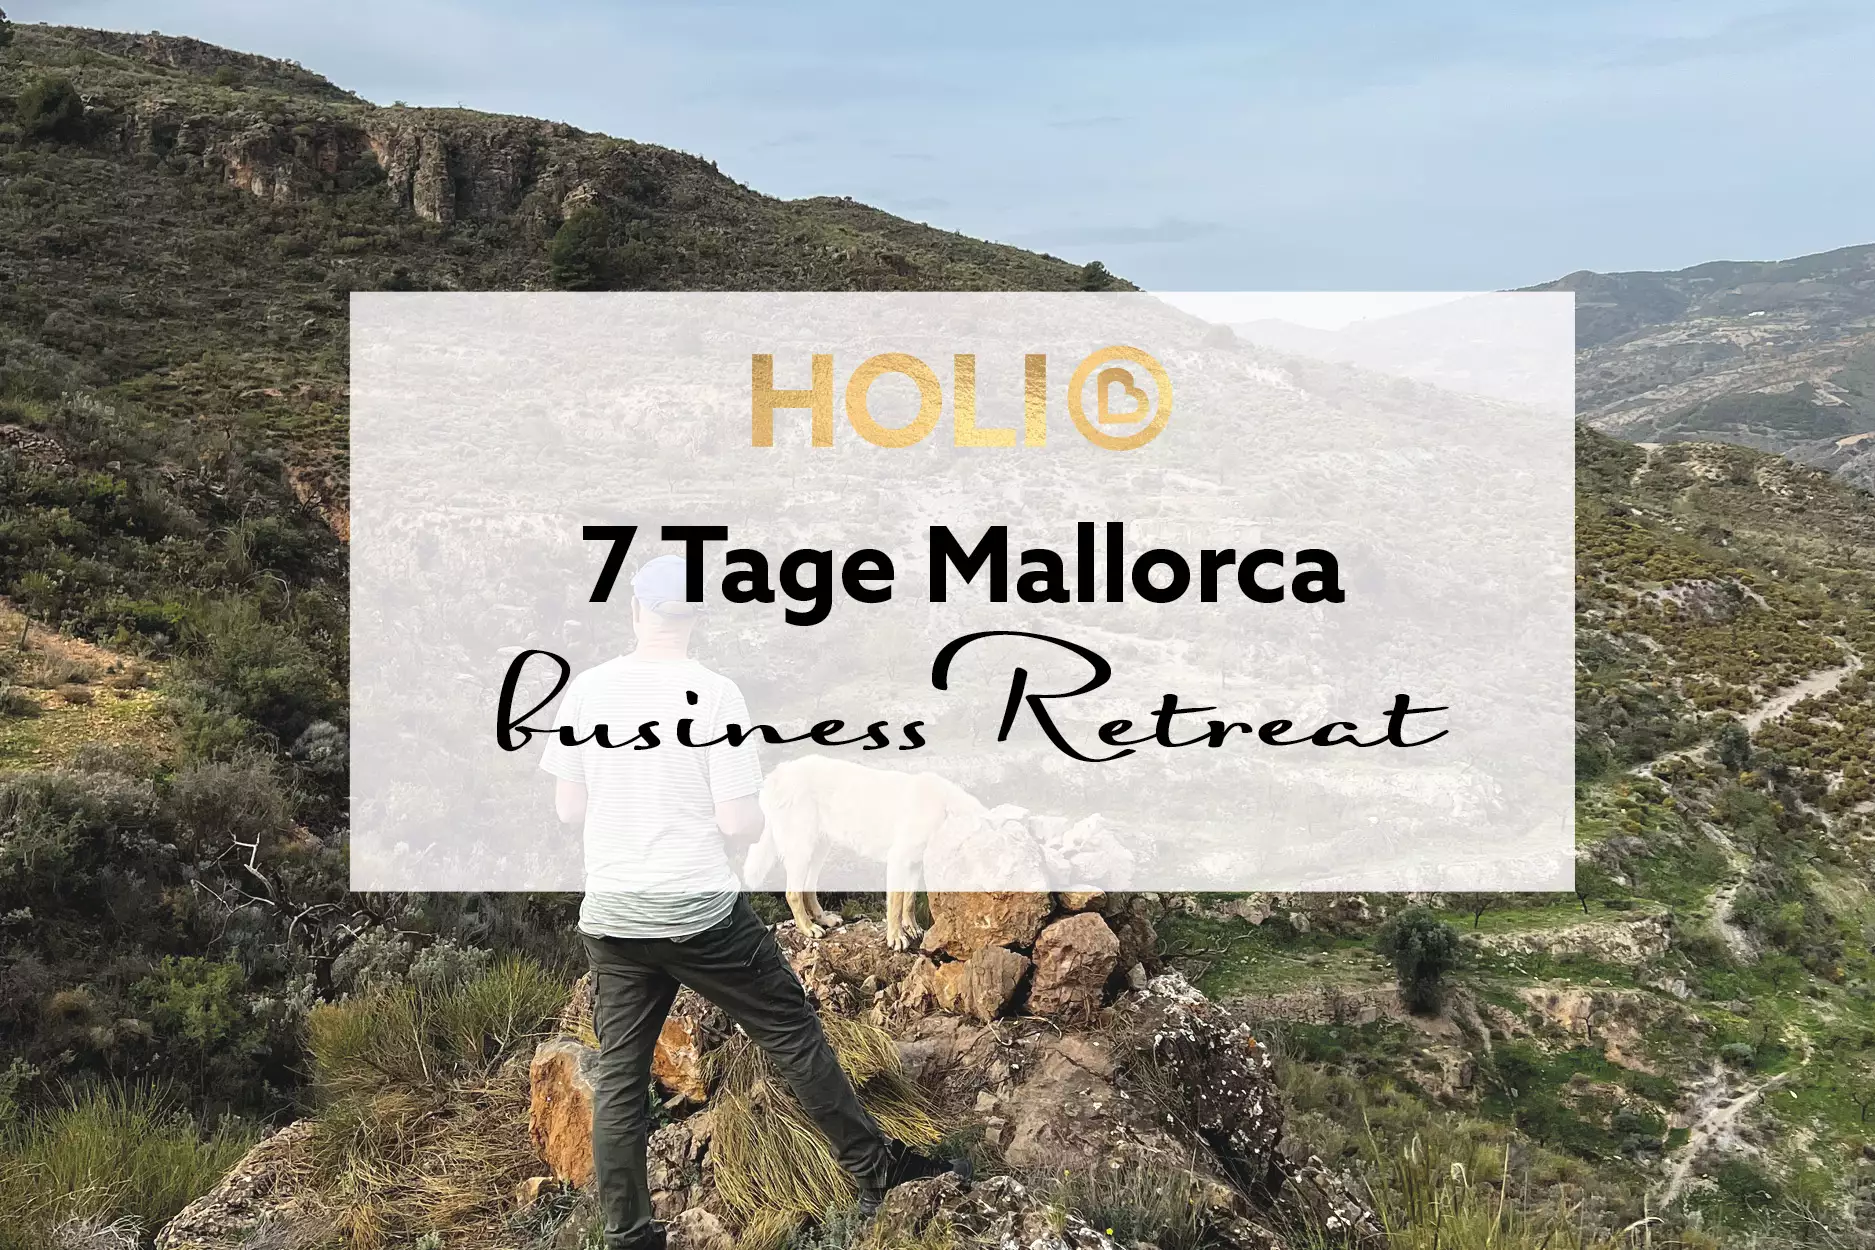 7 Tage Business-Retreat Mallorca